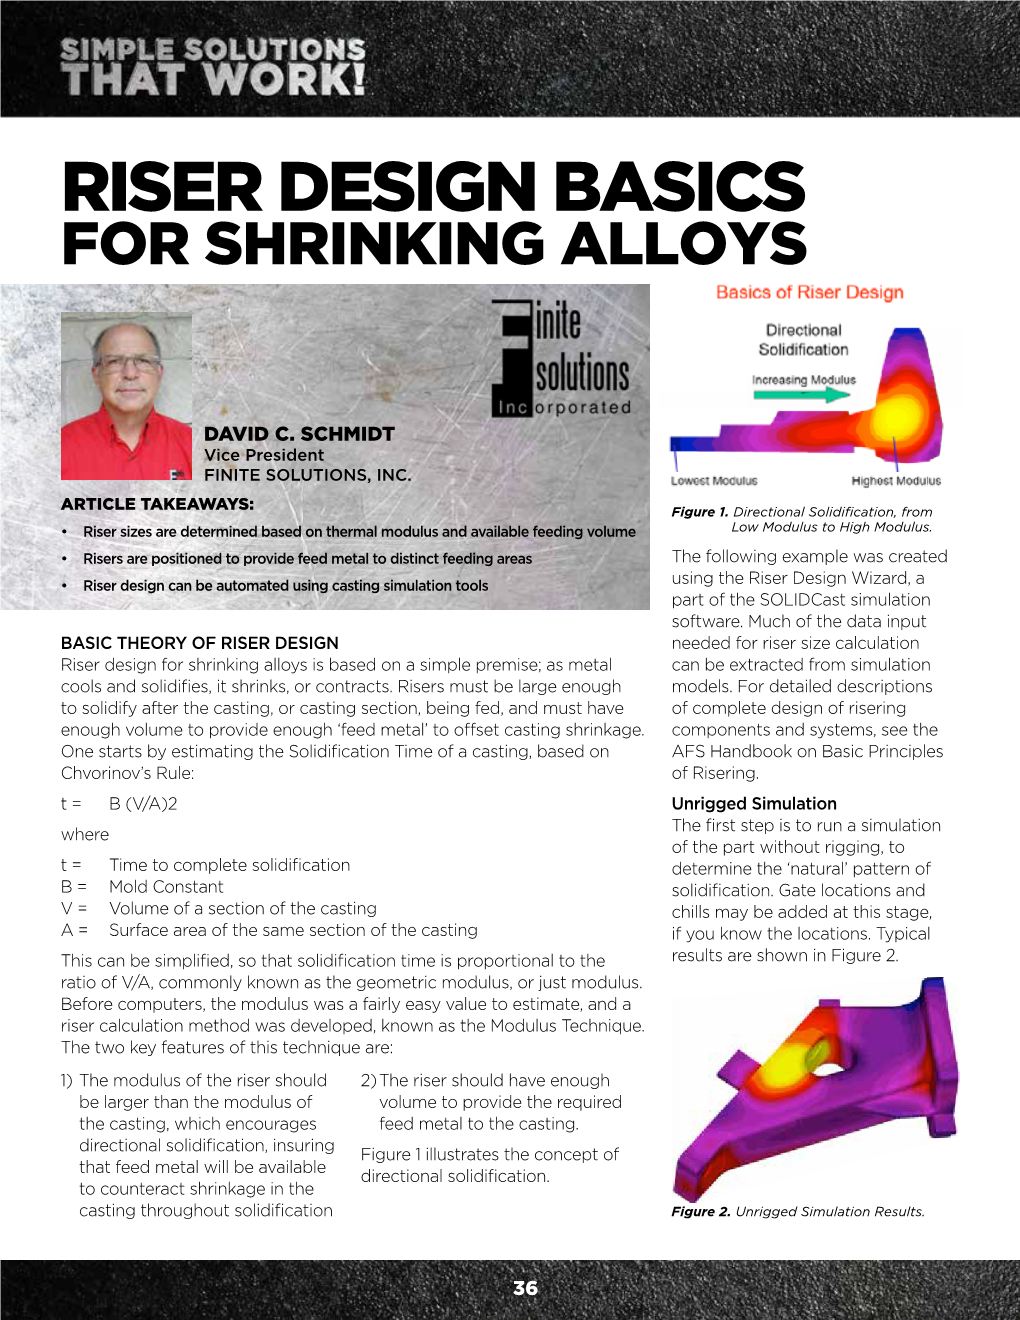 Riser Design Basics for Shrinking Alloys